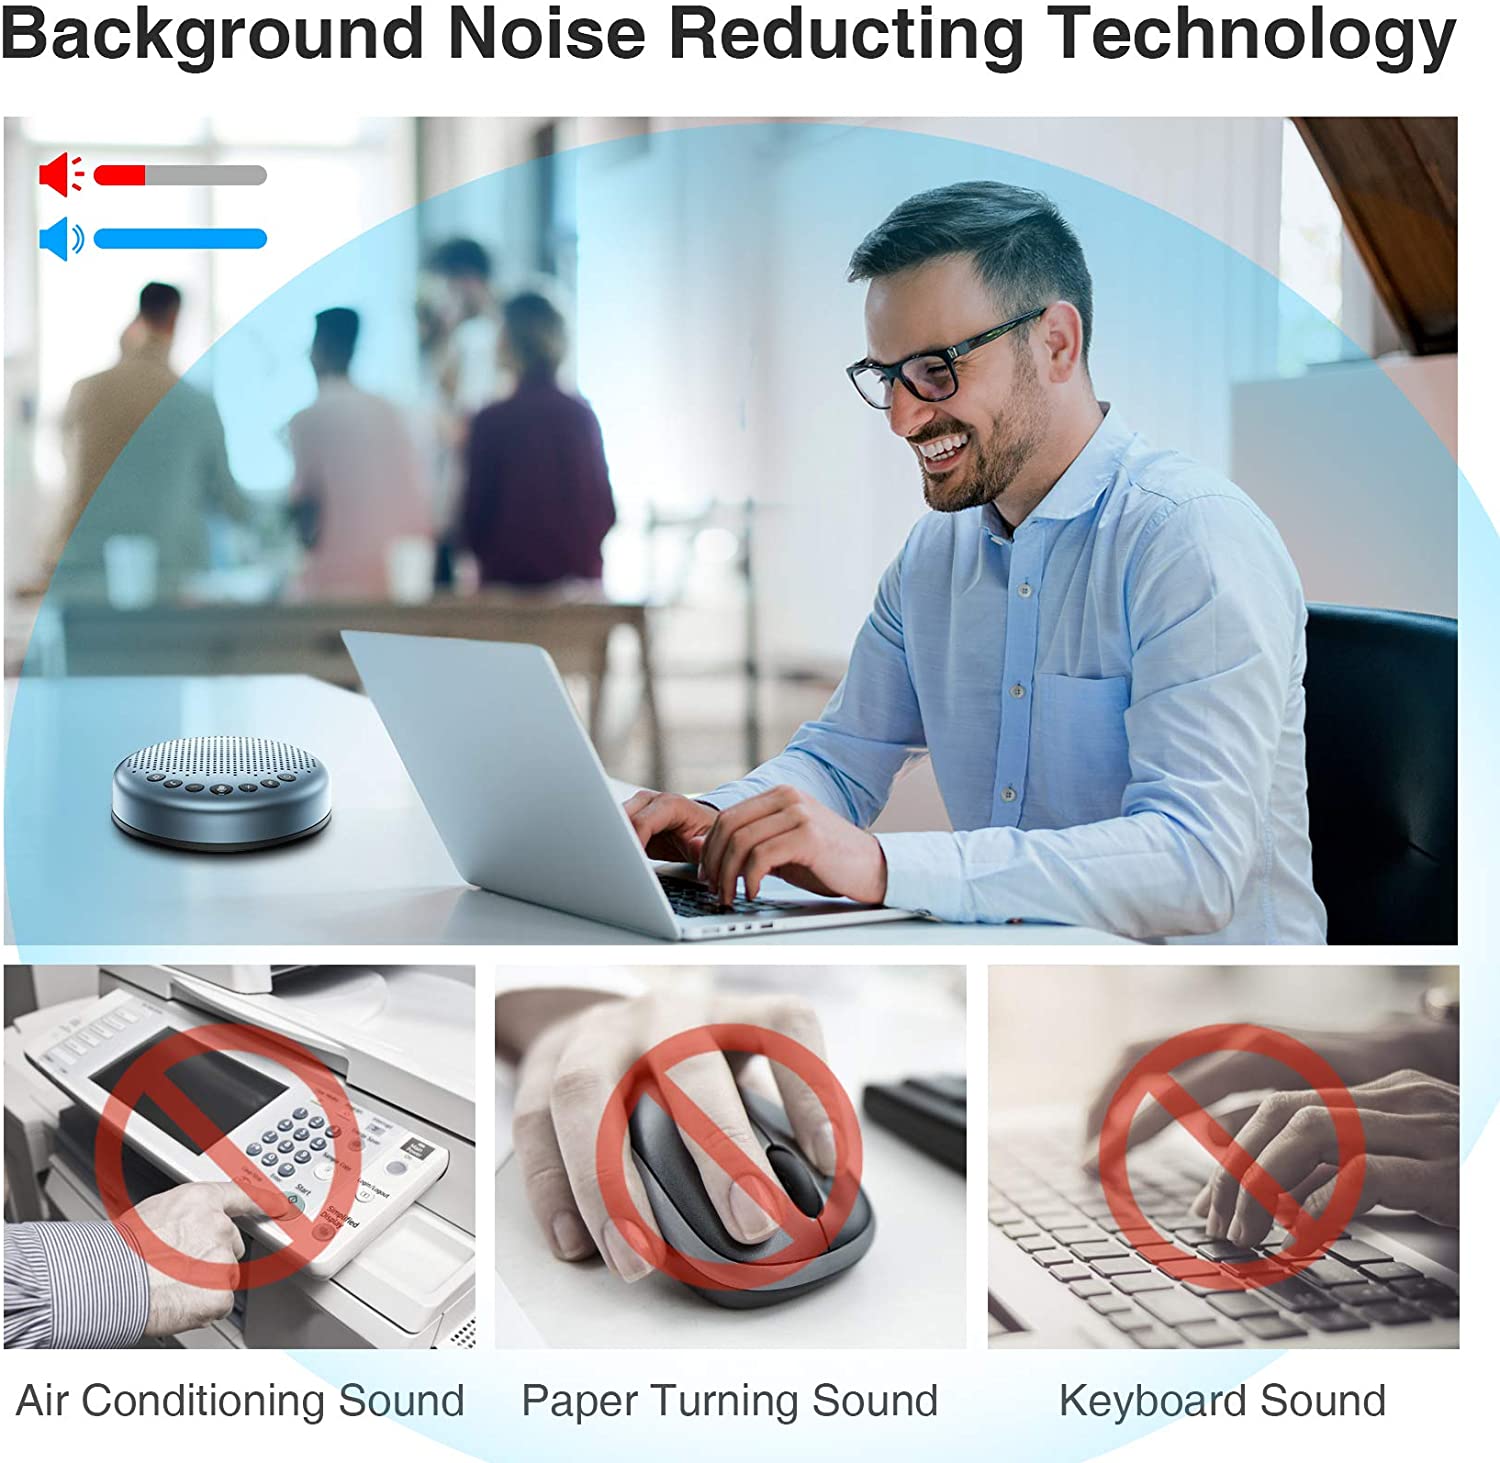 Background Noise Reducting Technology